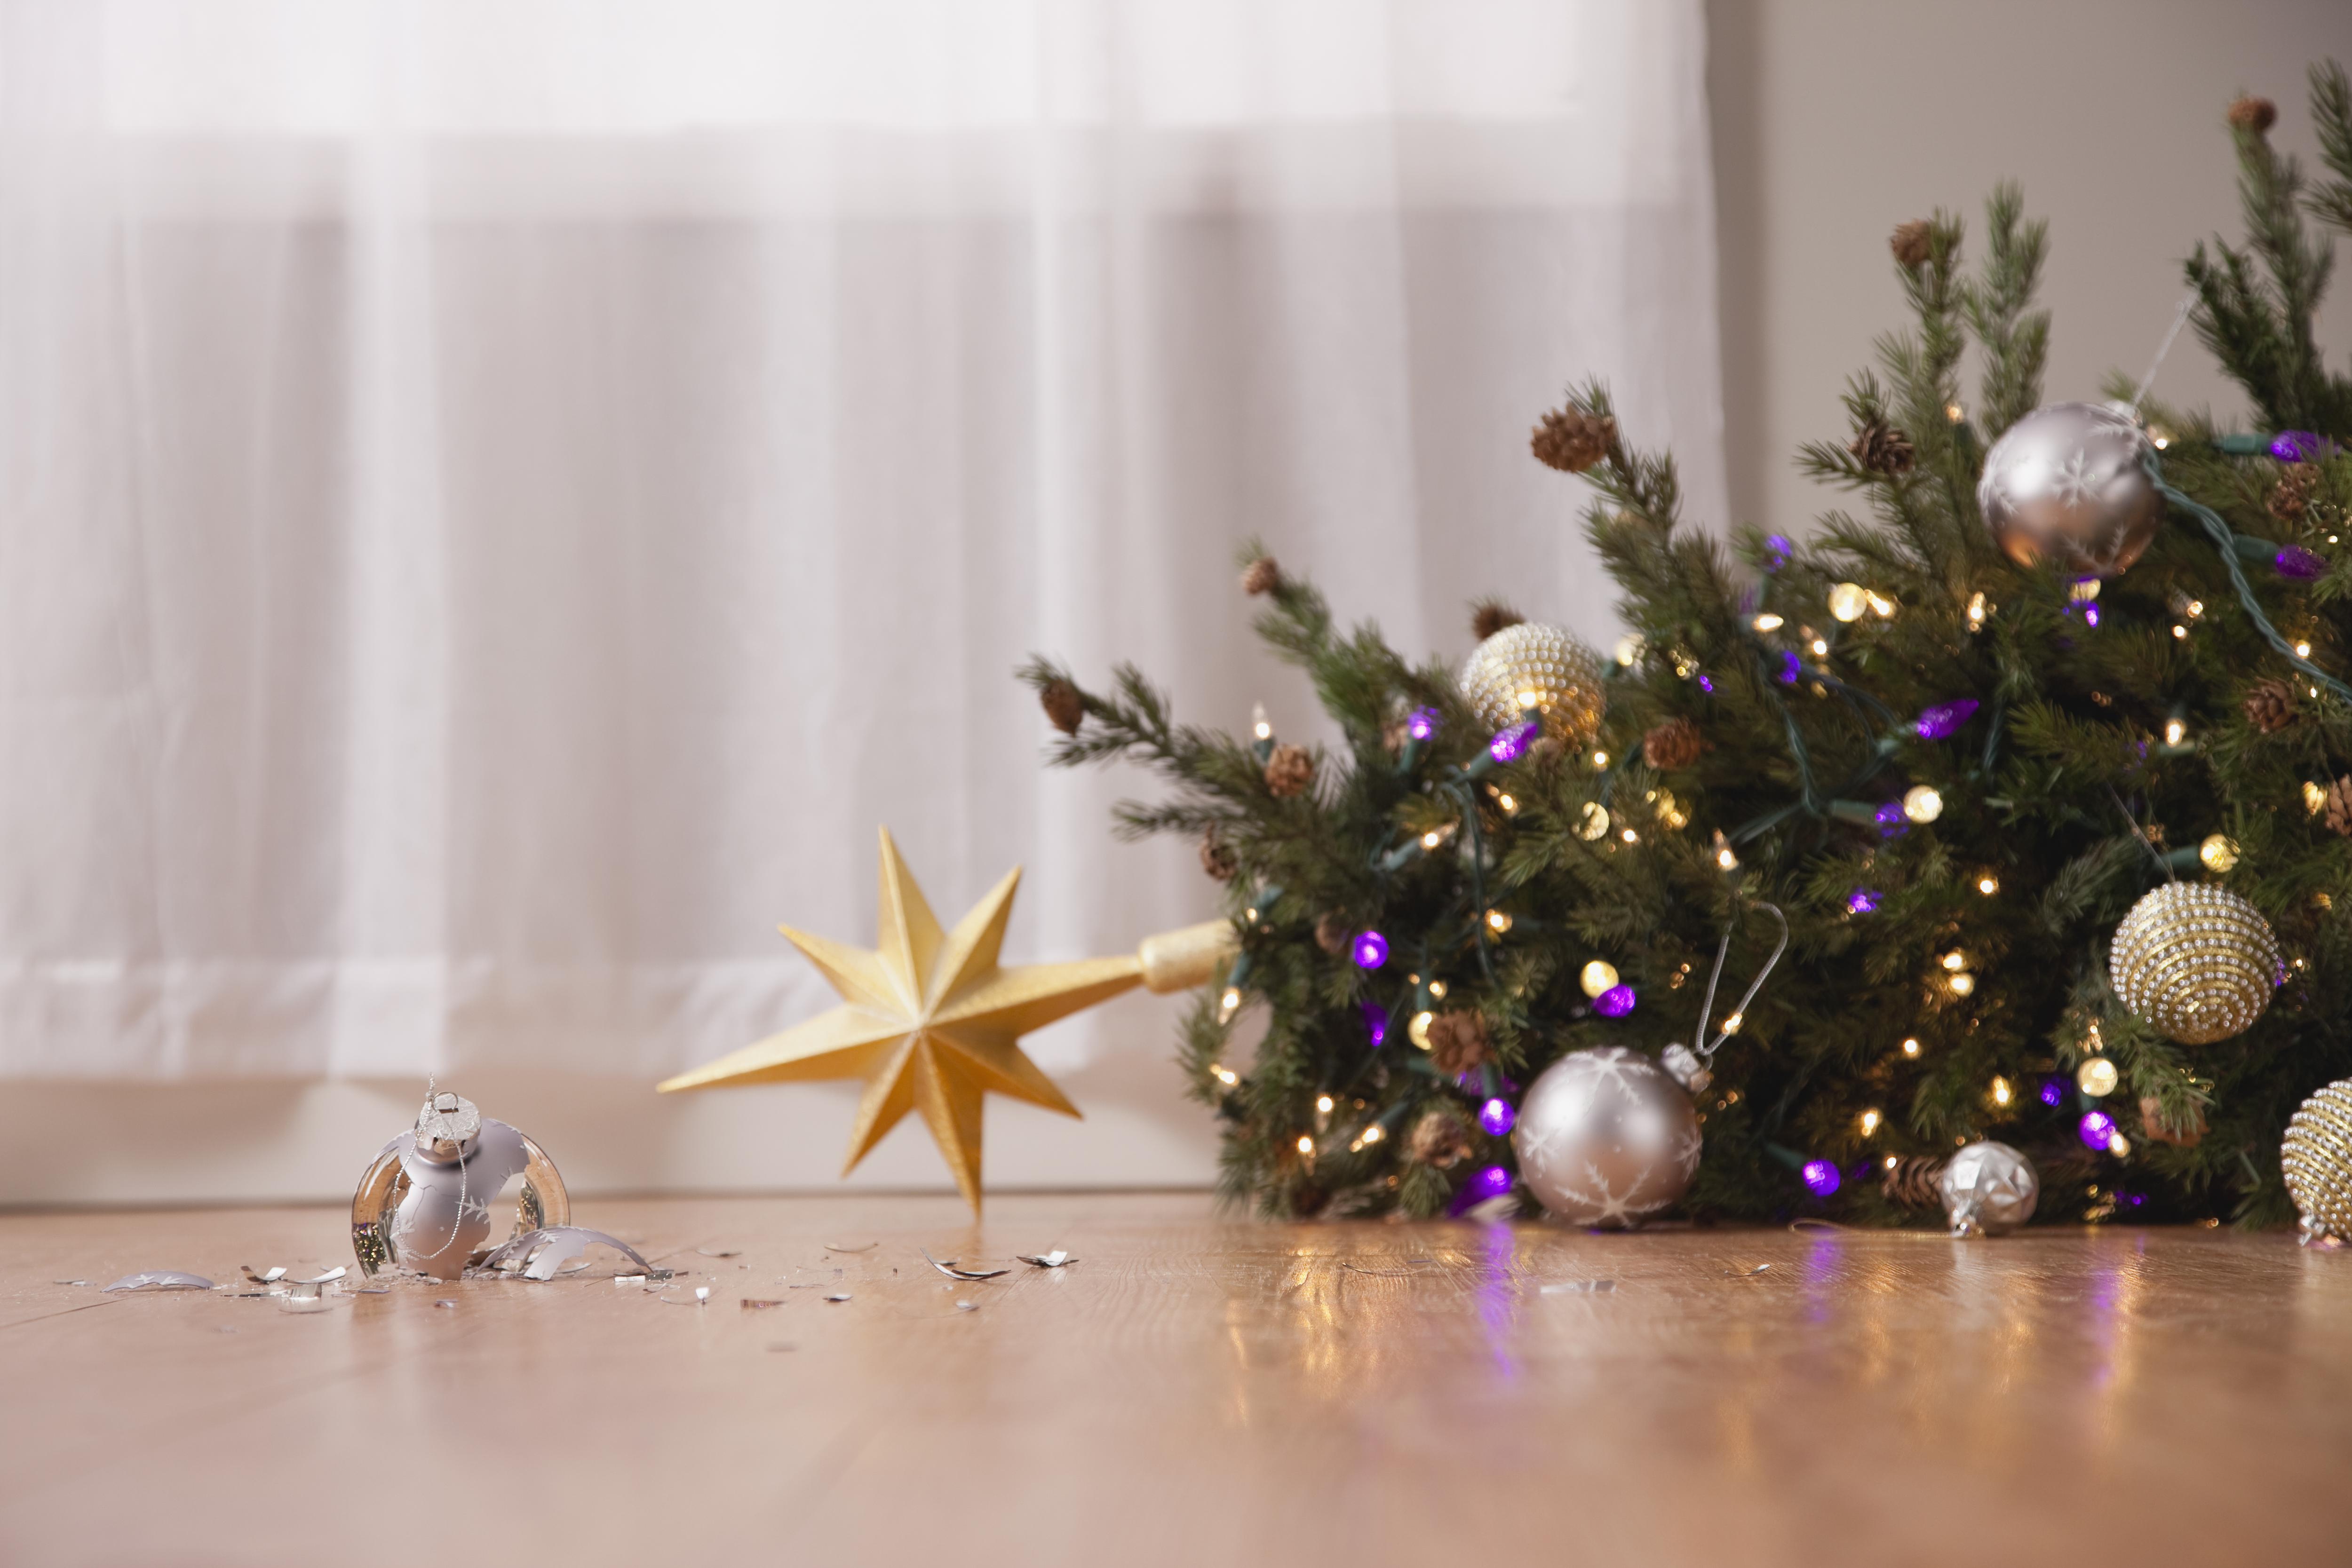 Фото №4 - Опасная елка и неадекватный Дед Мороз: как избежать происшествий в Новый год